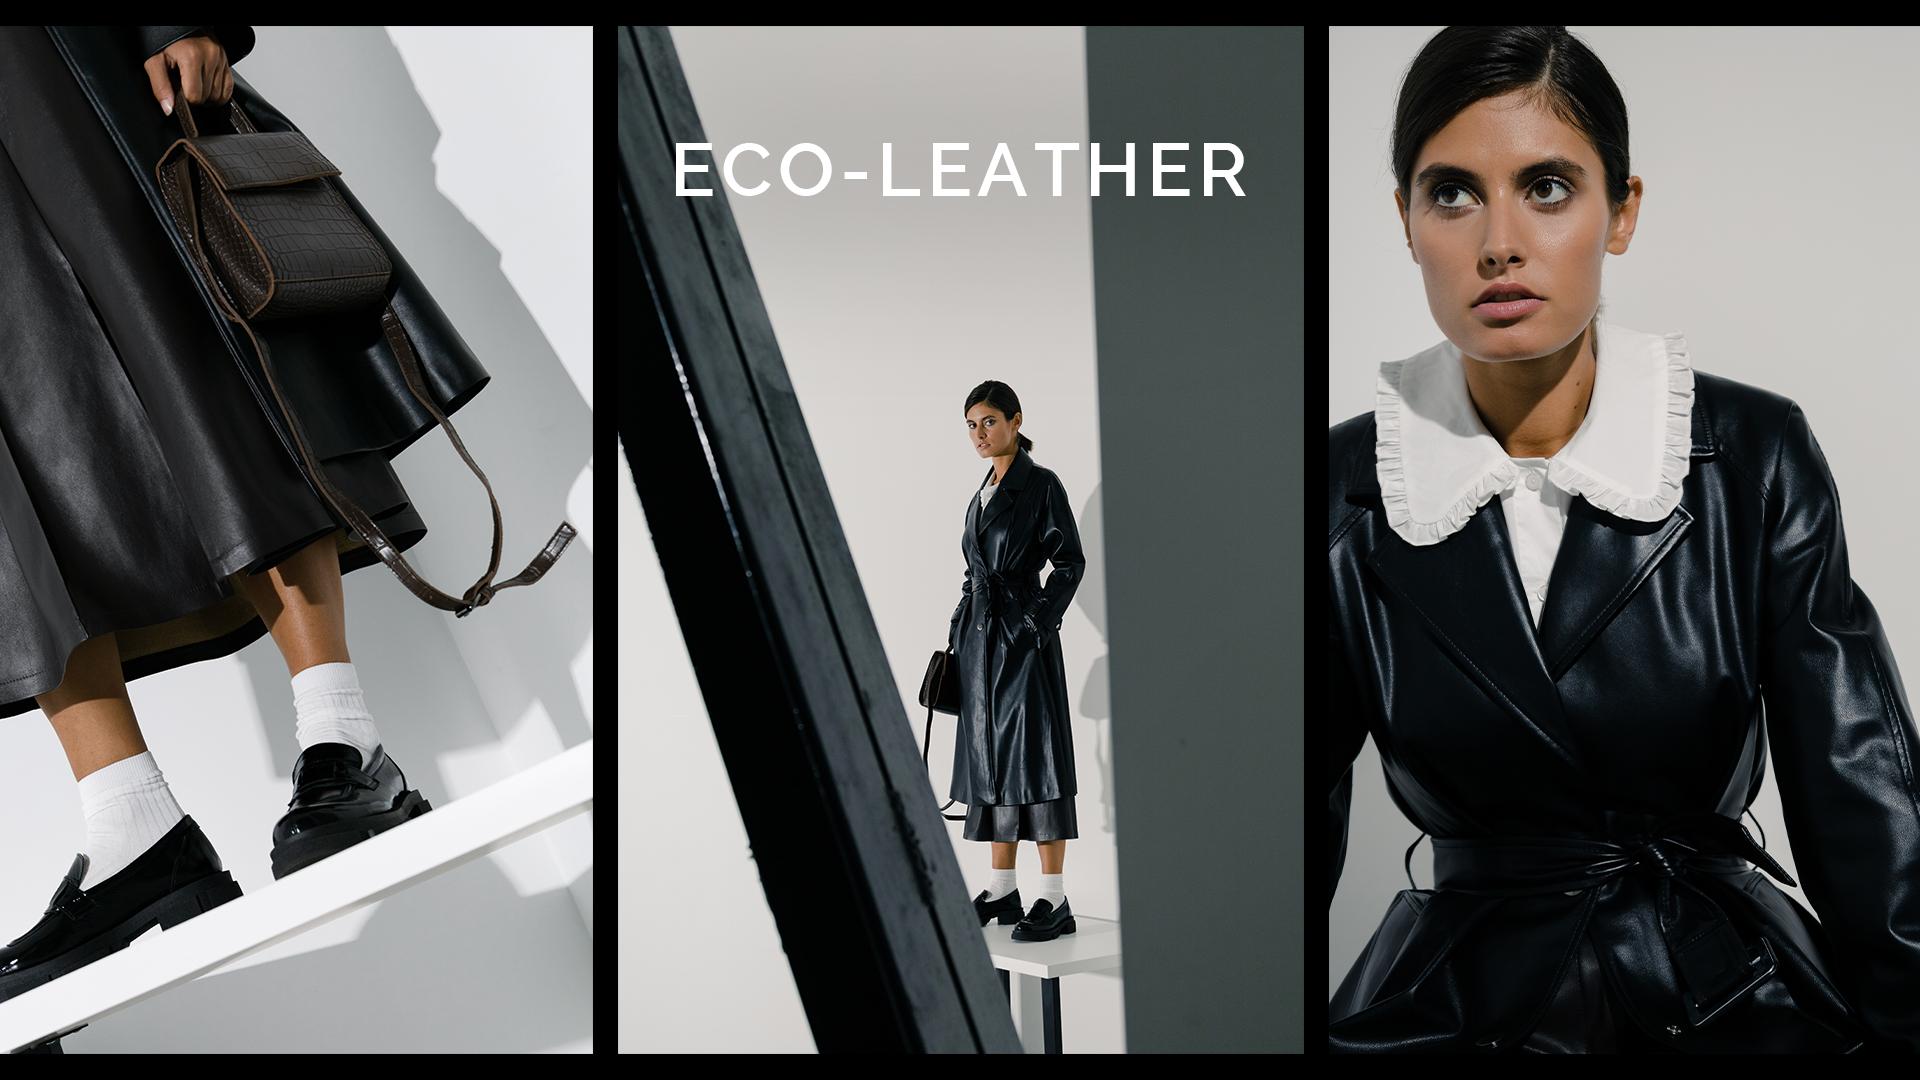 Eco-leather